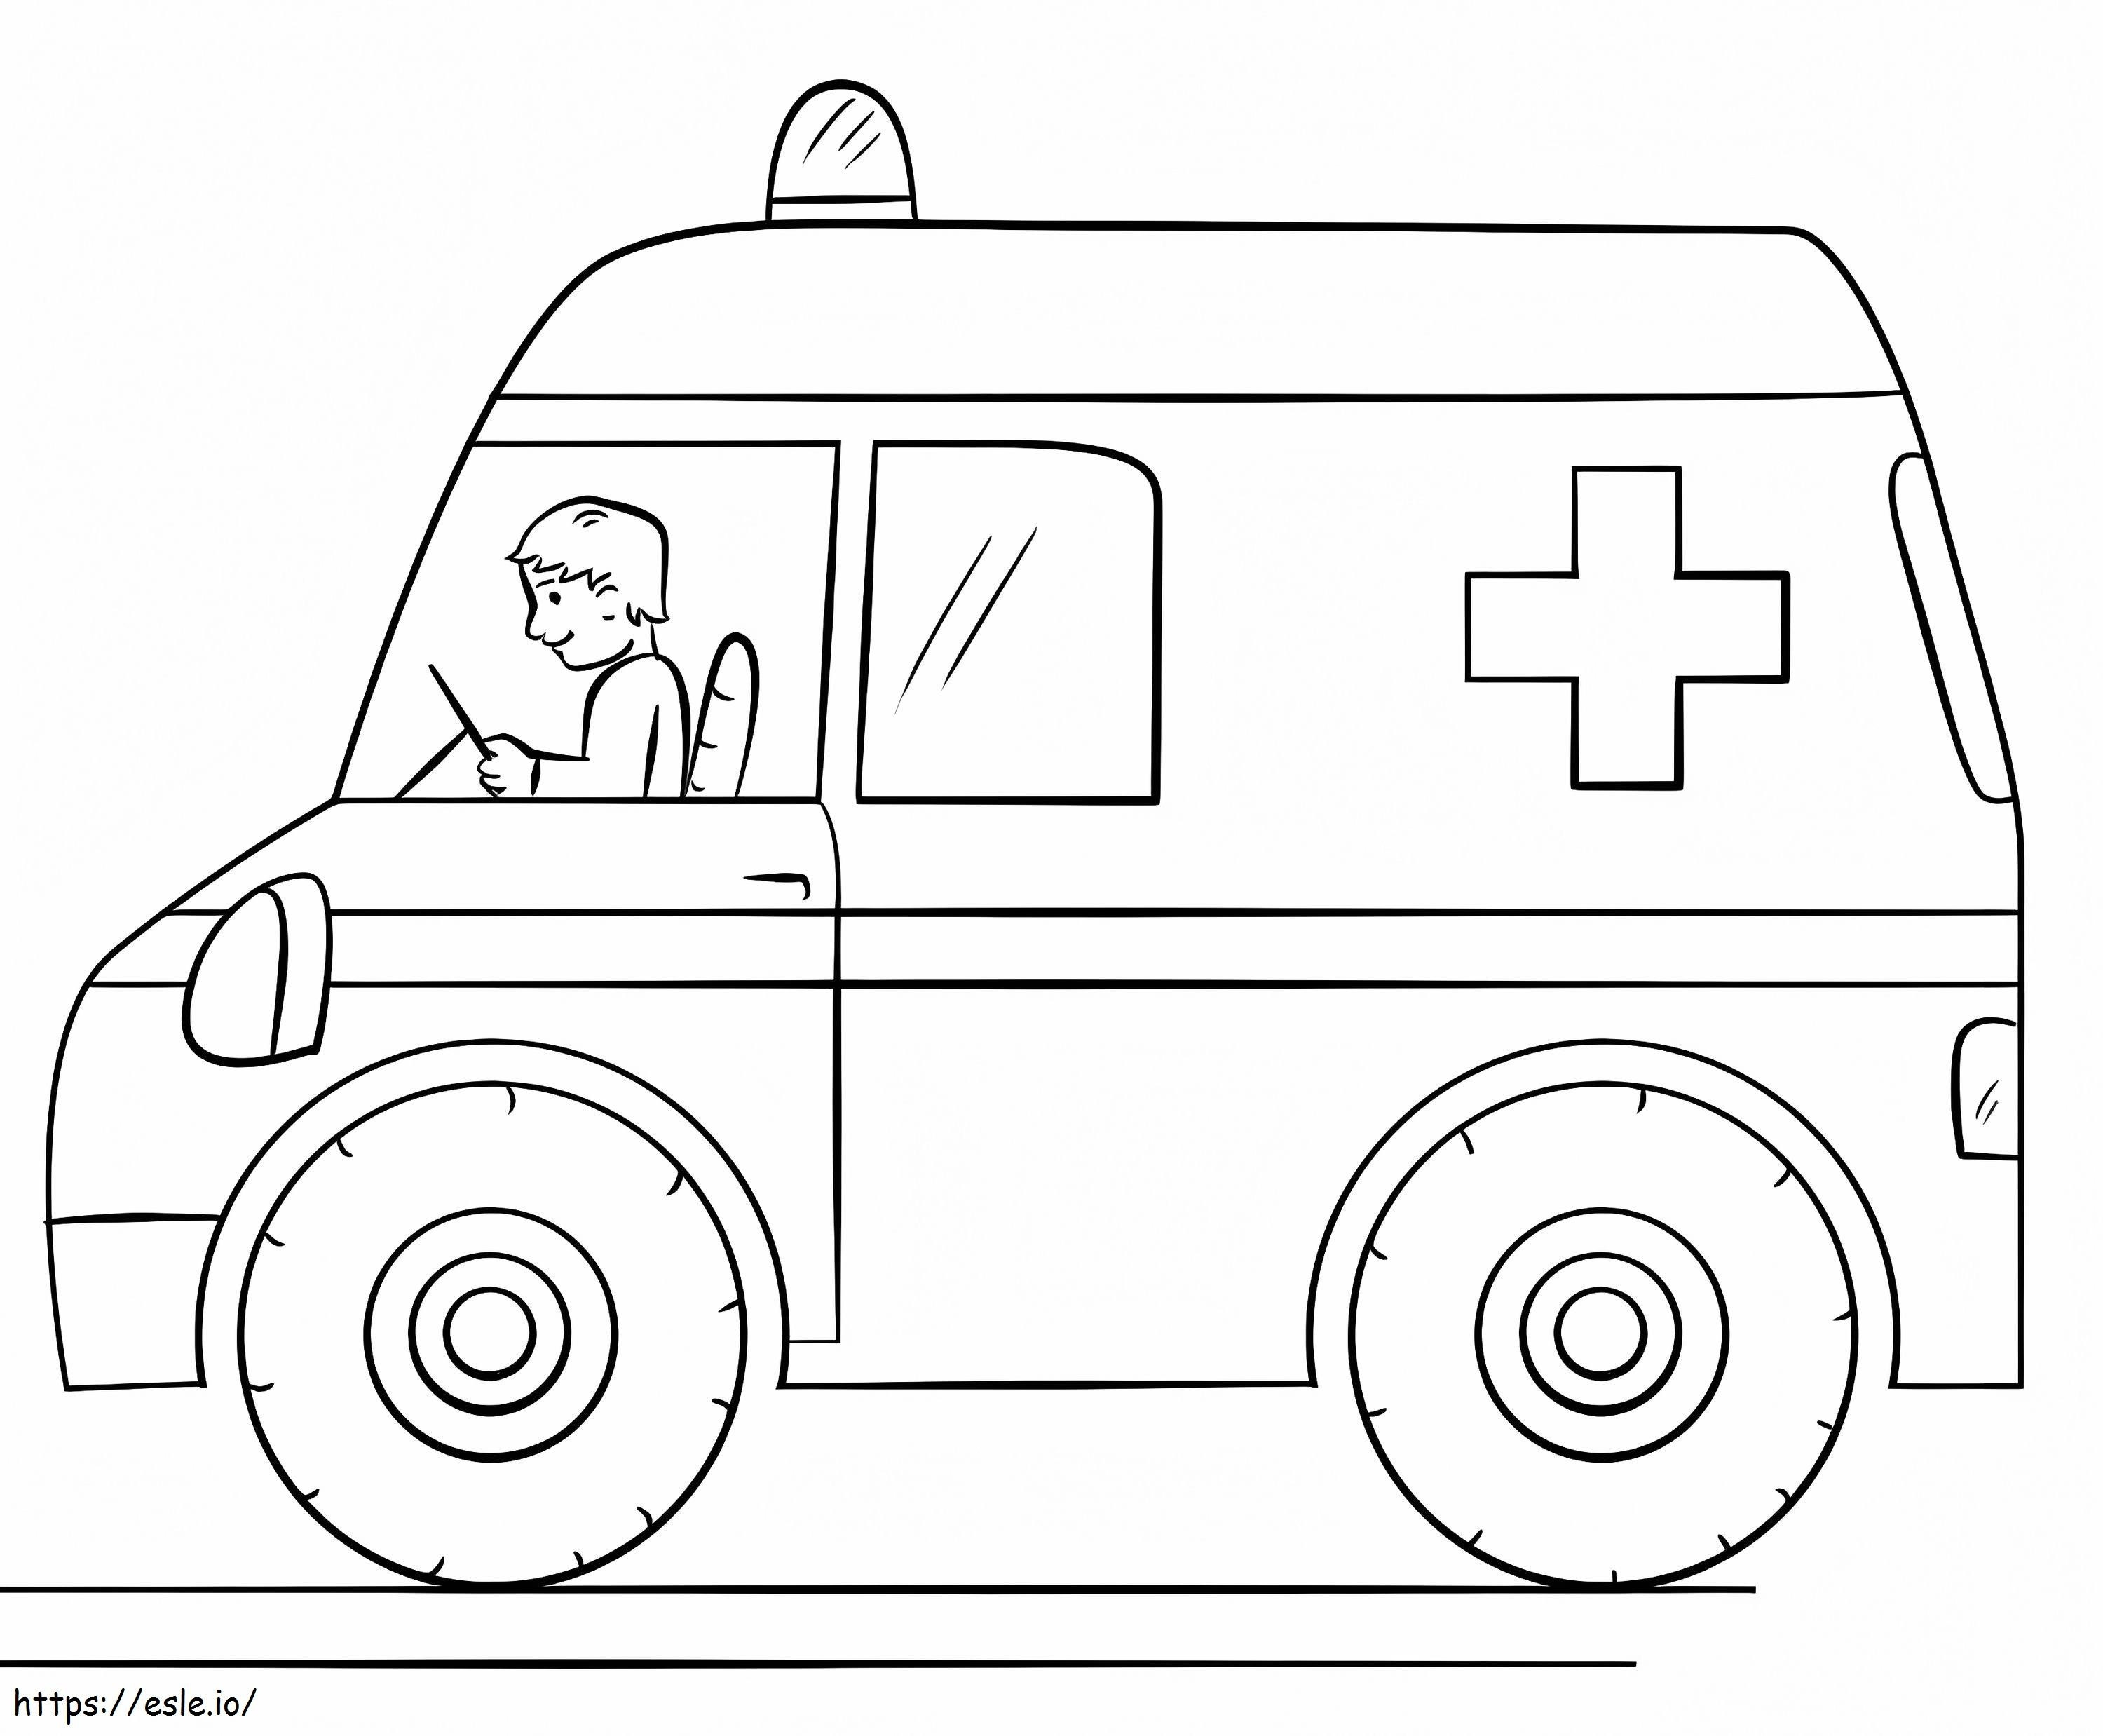 Krankenwagen 21 ausmalbilder